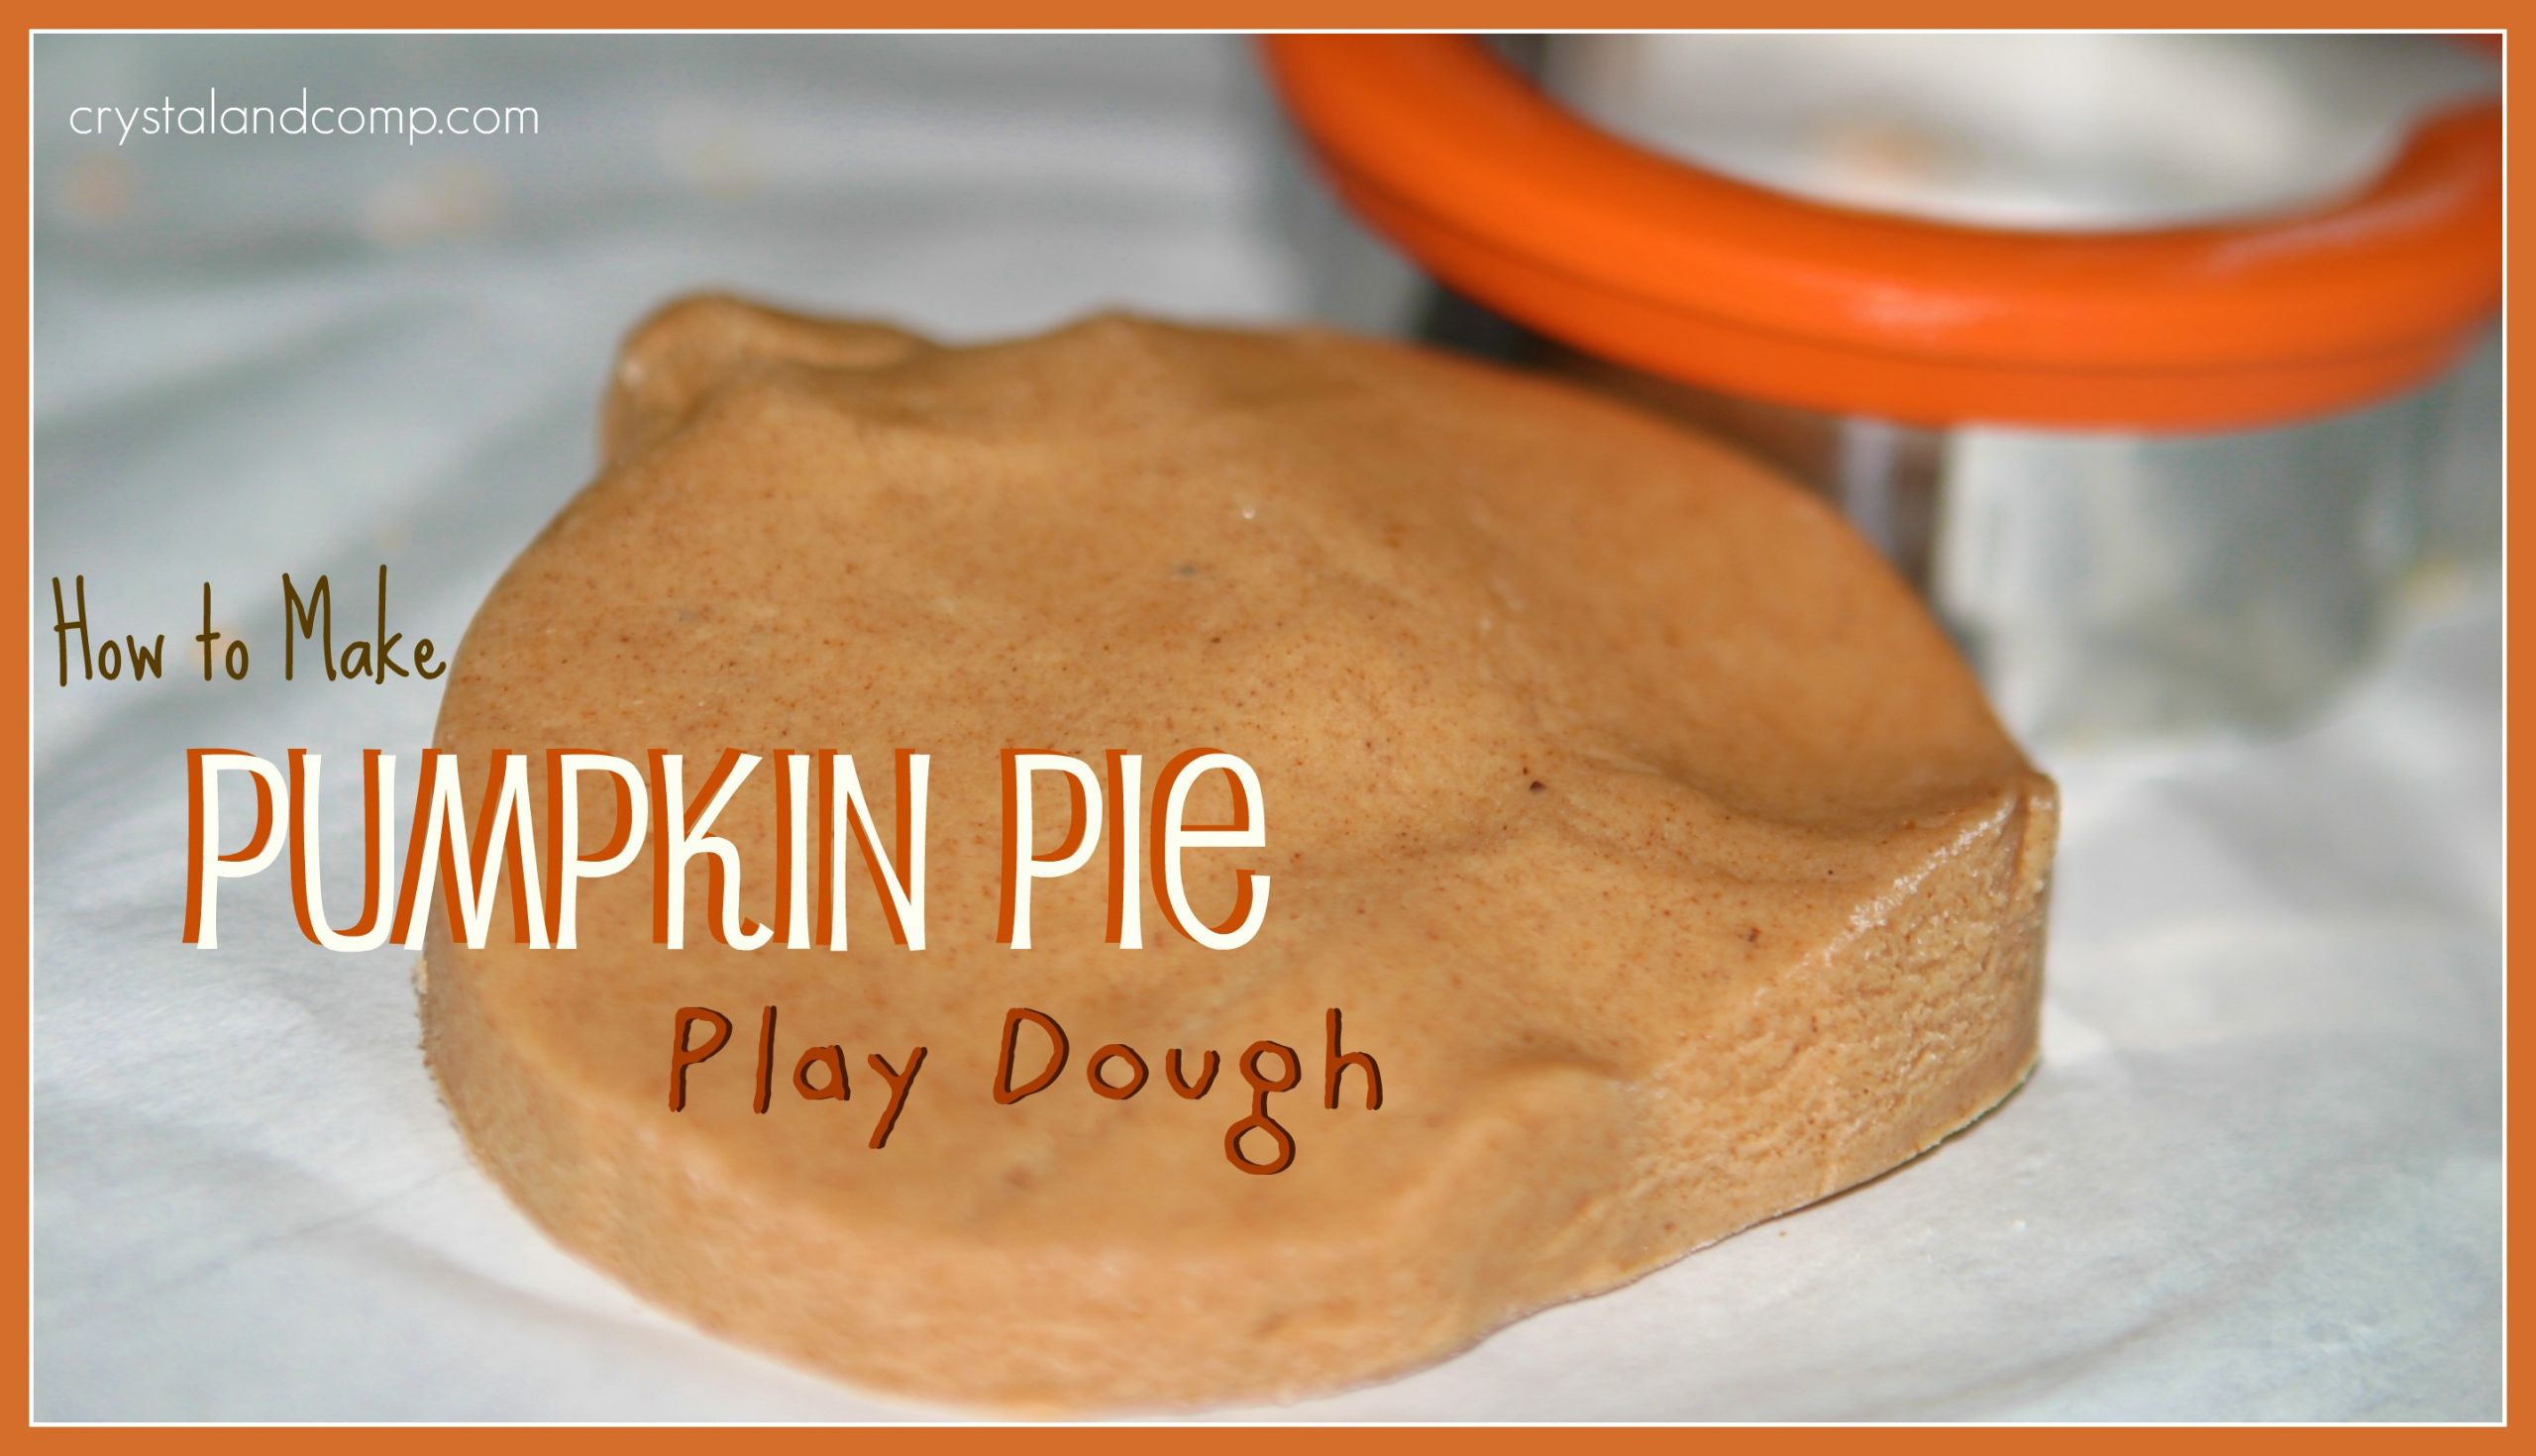 Pumpkin Pie Crafting Recipe
 Pumpkin Pie Play Dough Recipe